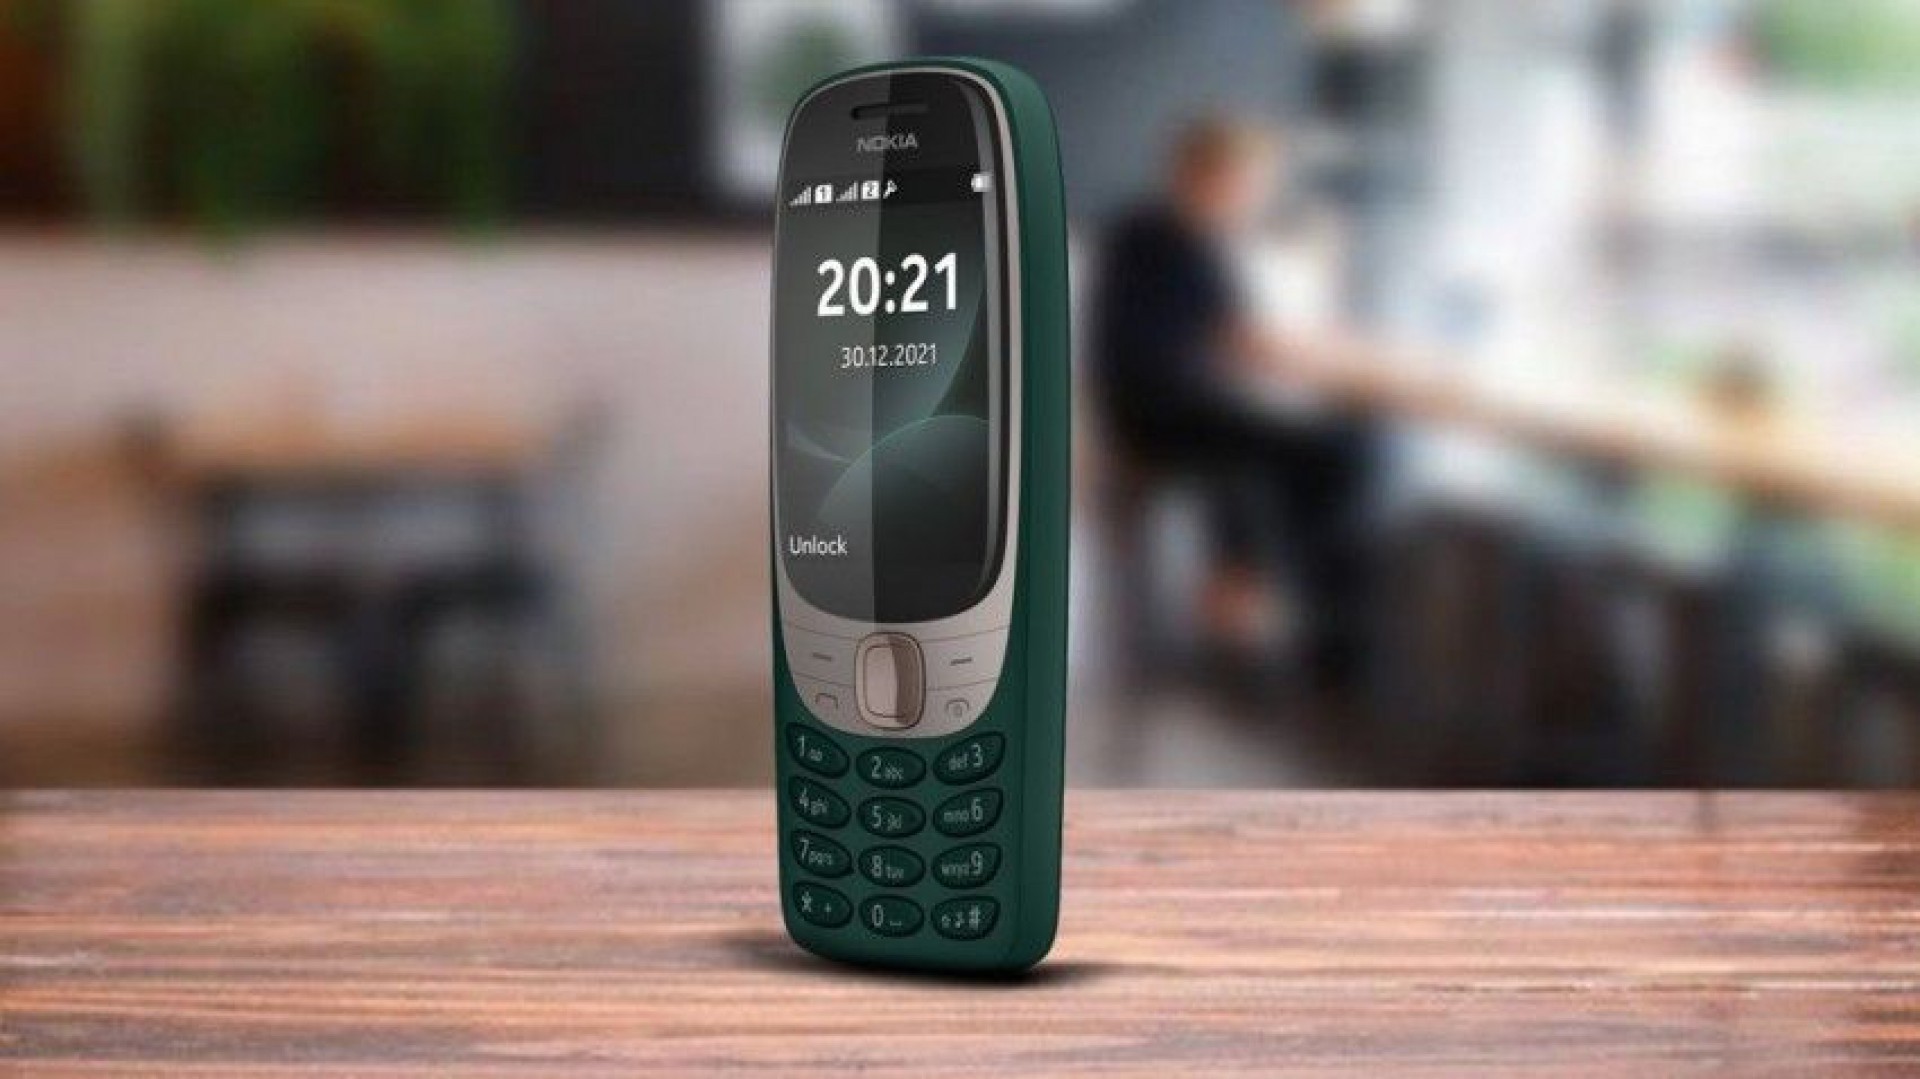 Nokia 110 fabricado no Brasil é lançado com jogo da cobrinha